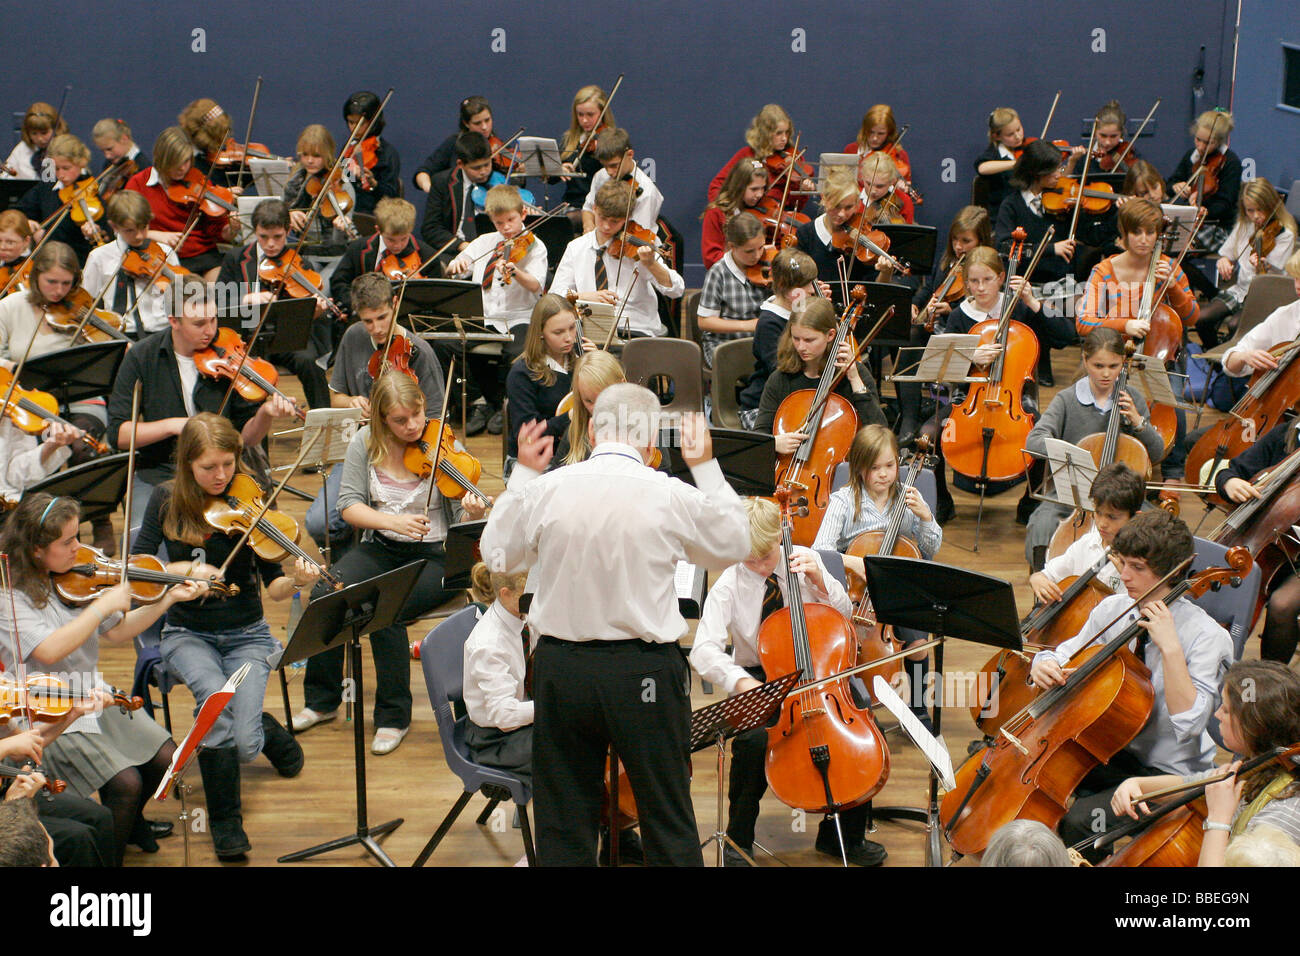 Kinder Bildung Musik Orchester Saiten Jugendabteilung mit Dirigent im Vordergrund Sir Michael Tippet geben einen Musikworkshop Stockfoto